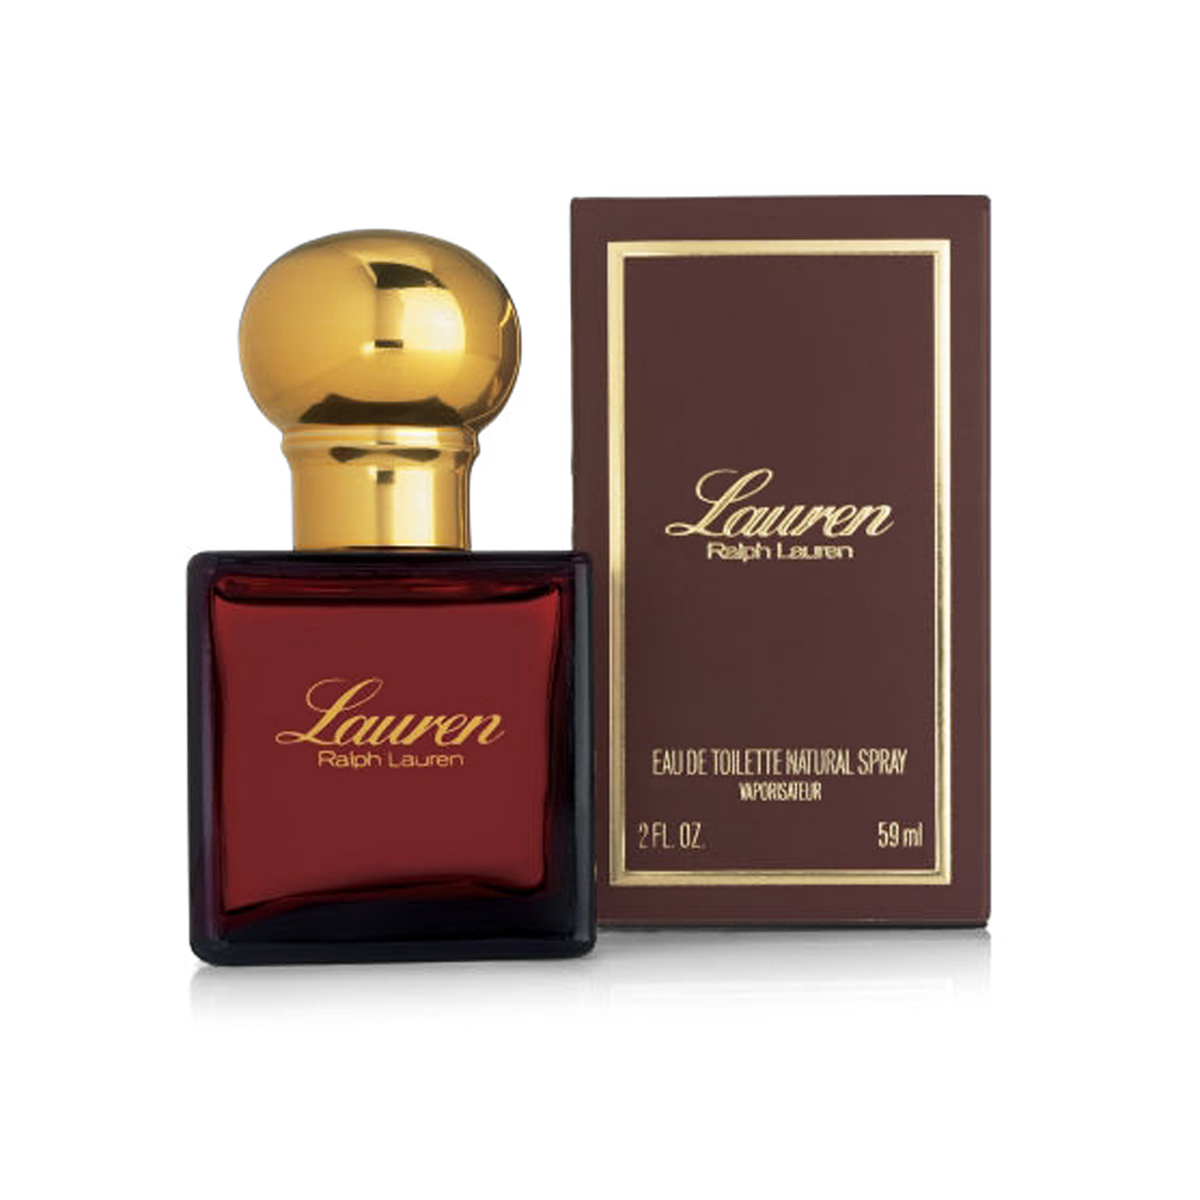 Lauren Eau de Toilette Spray | All Fragrance Scents for Her | Ralph Lauren